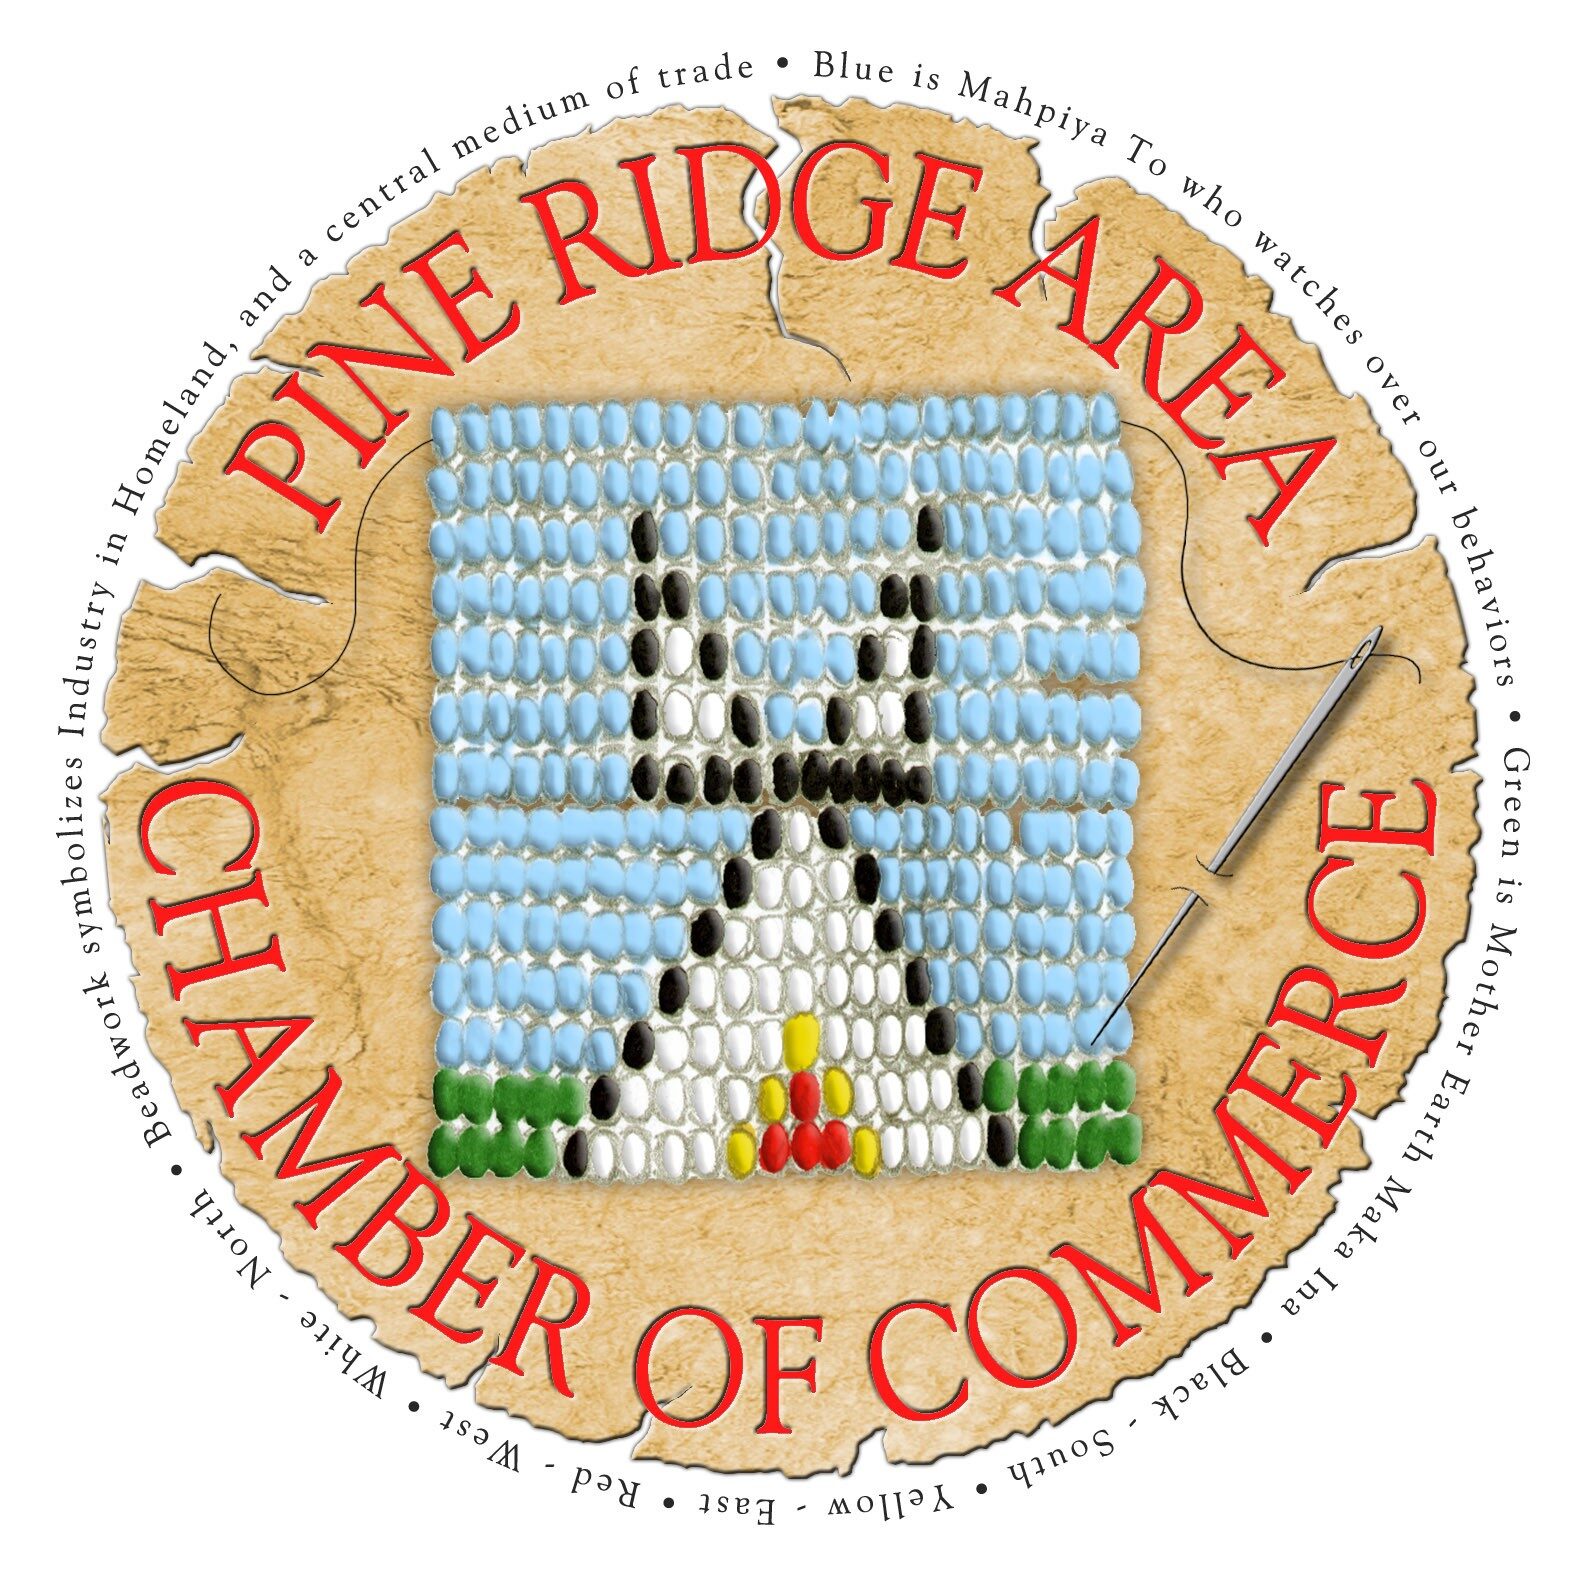 Pine Ridge Chamber of Commerce